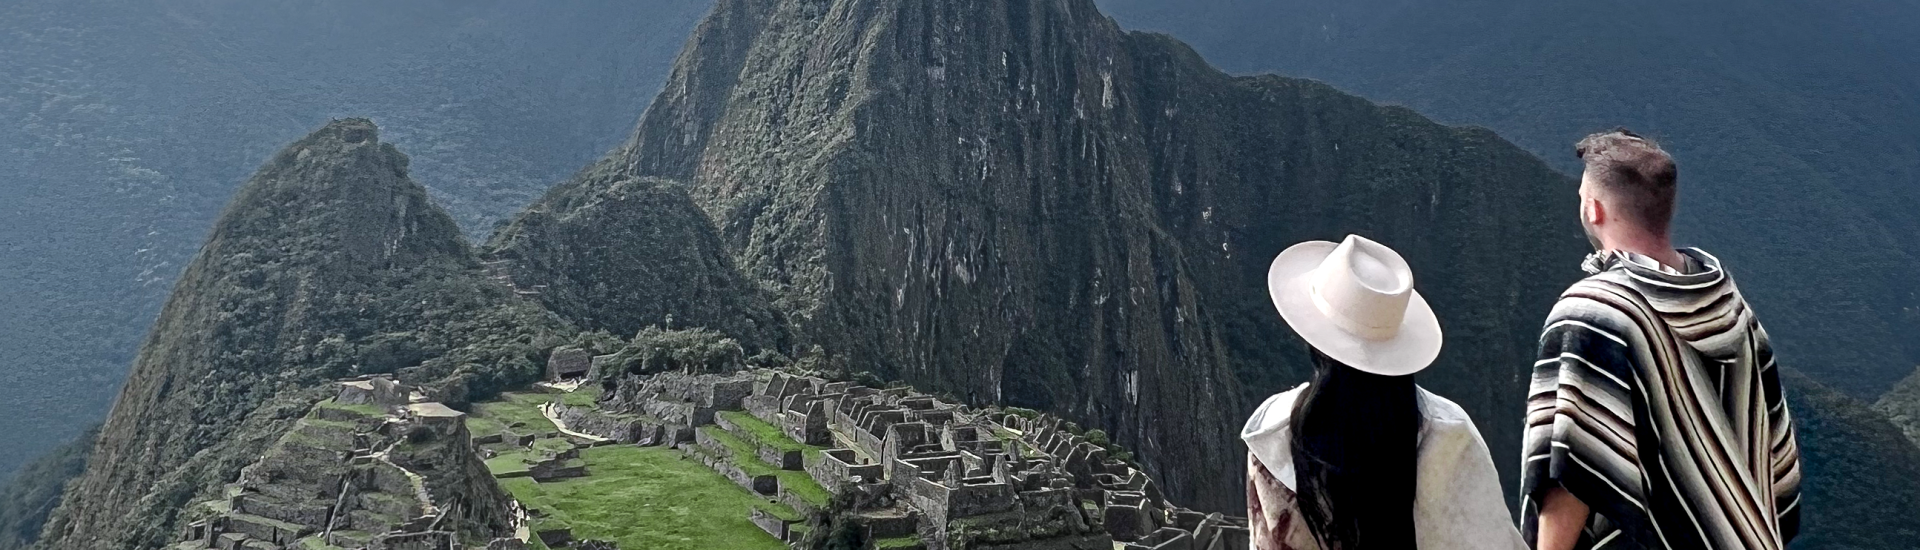 South America - two visitors in Machu Picchu